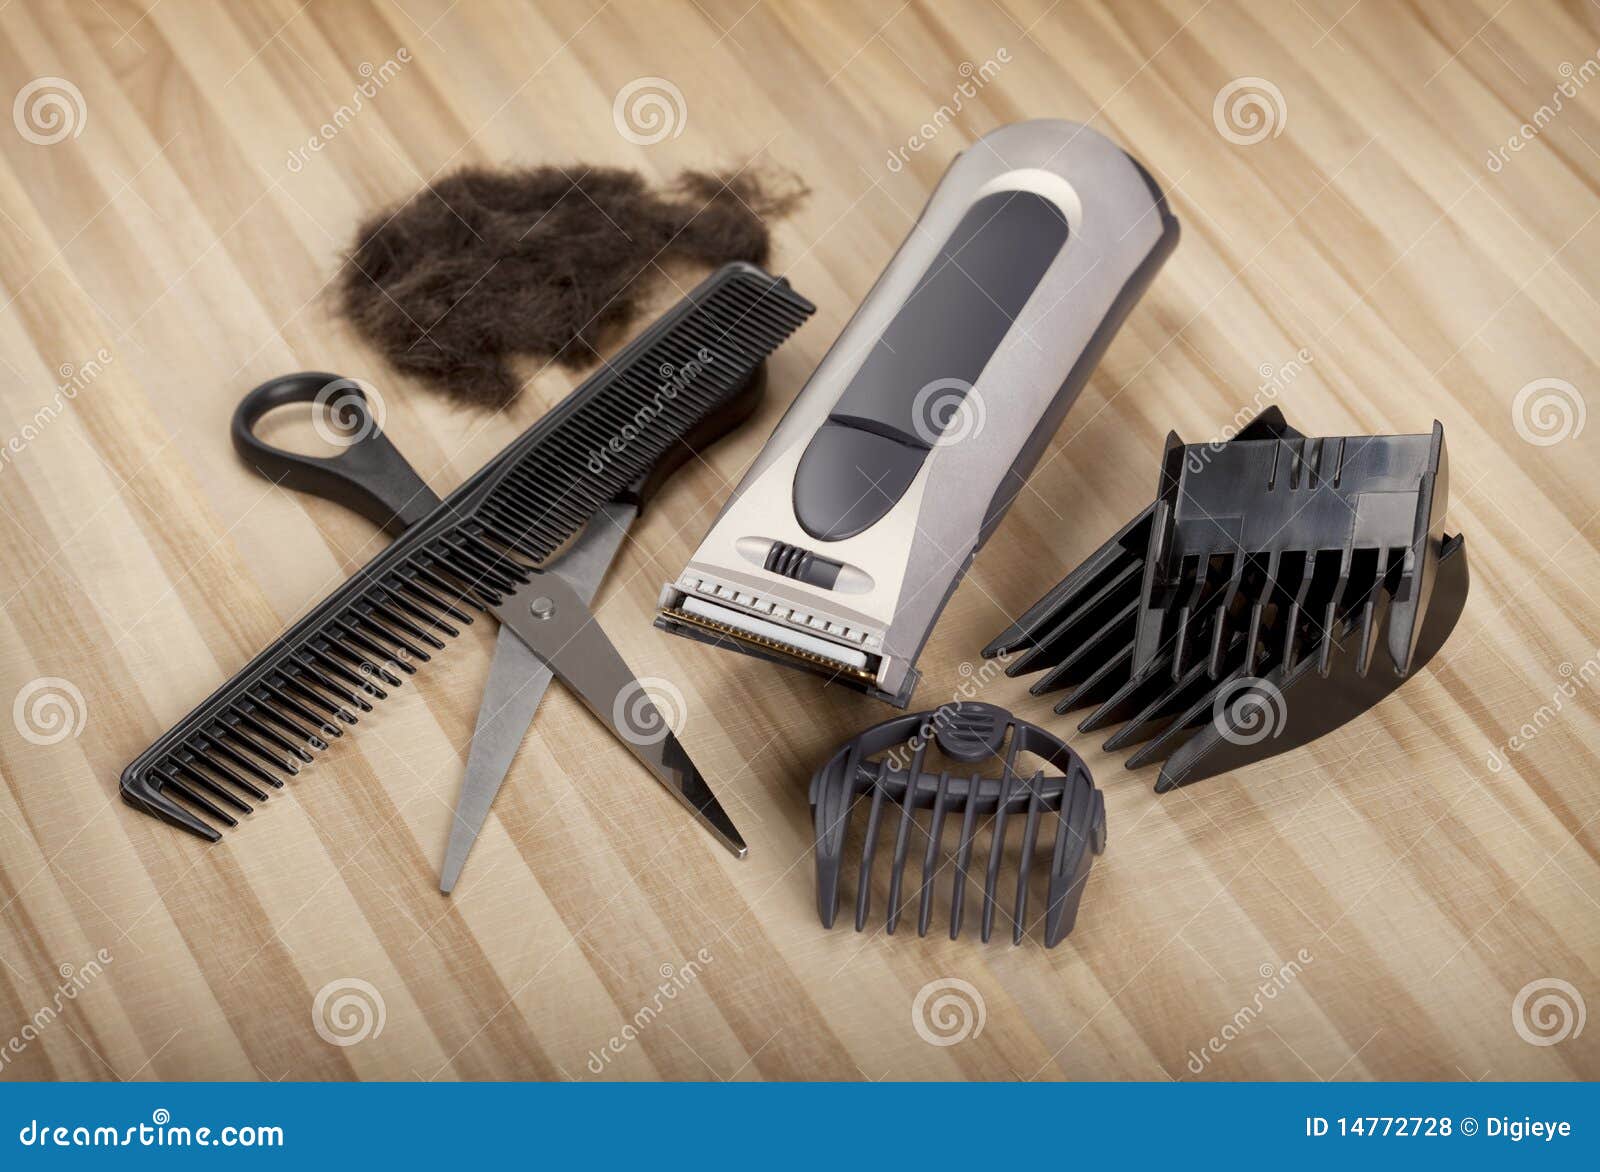 Как почистить машинку для волос. Инструменты для стрижки. Чистка волос машинкой. Щетка для чистки машинки для стрижки волос. Кисть для очистки машинки для стрижки.